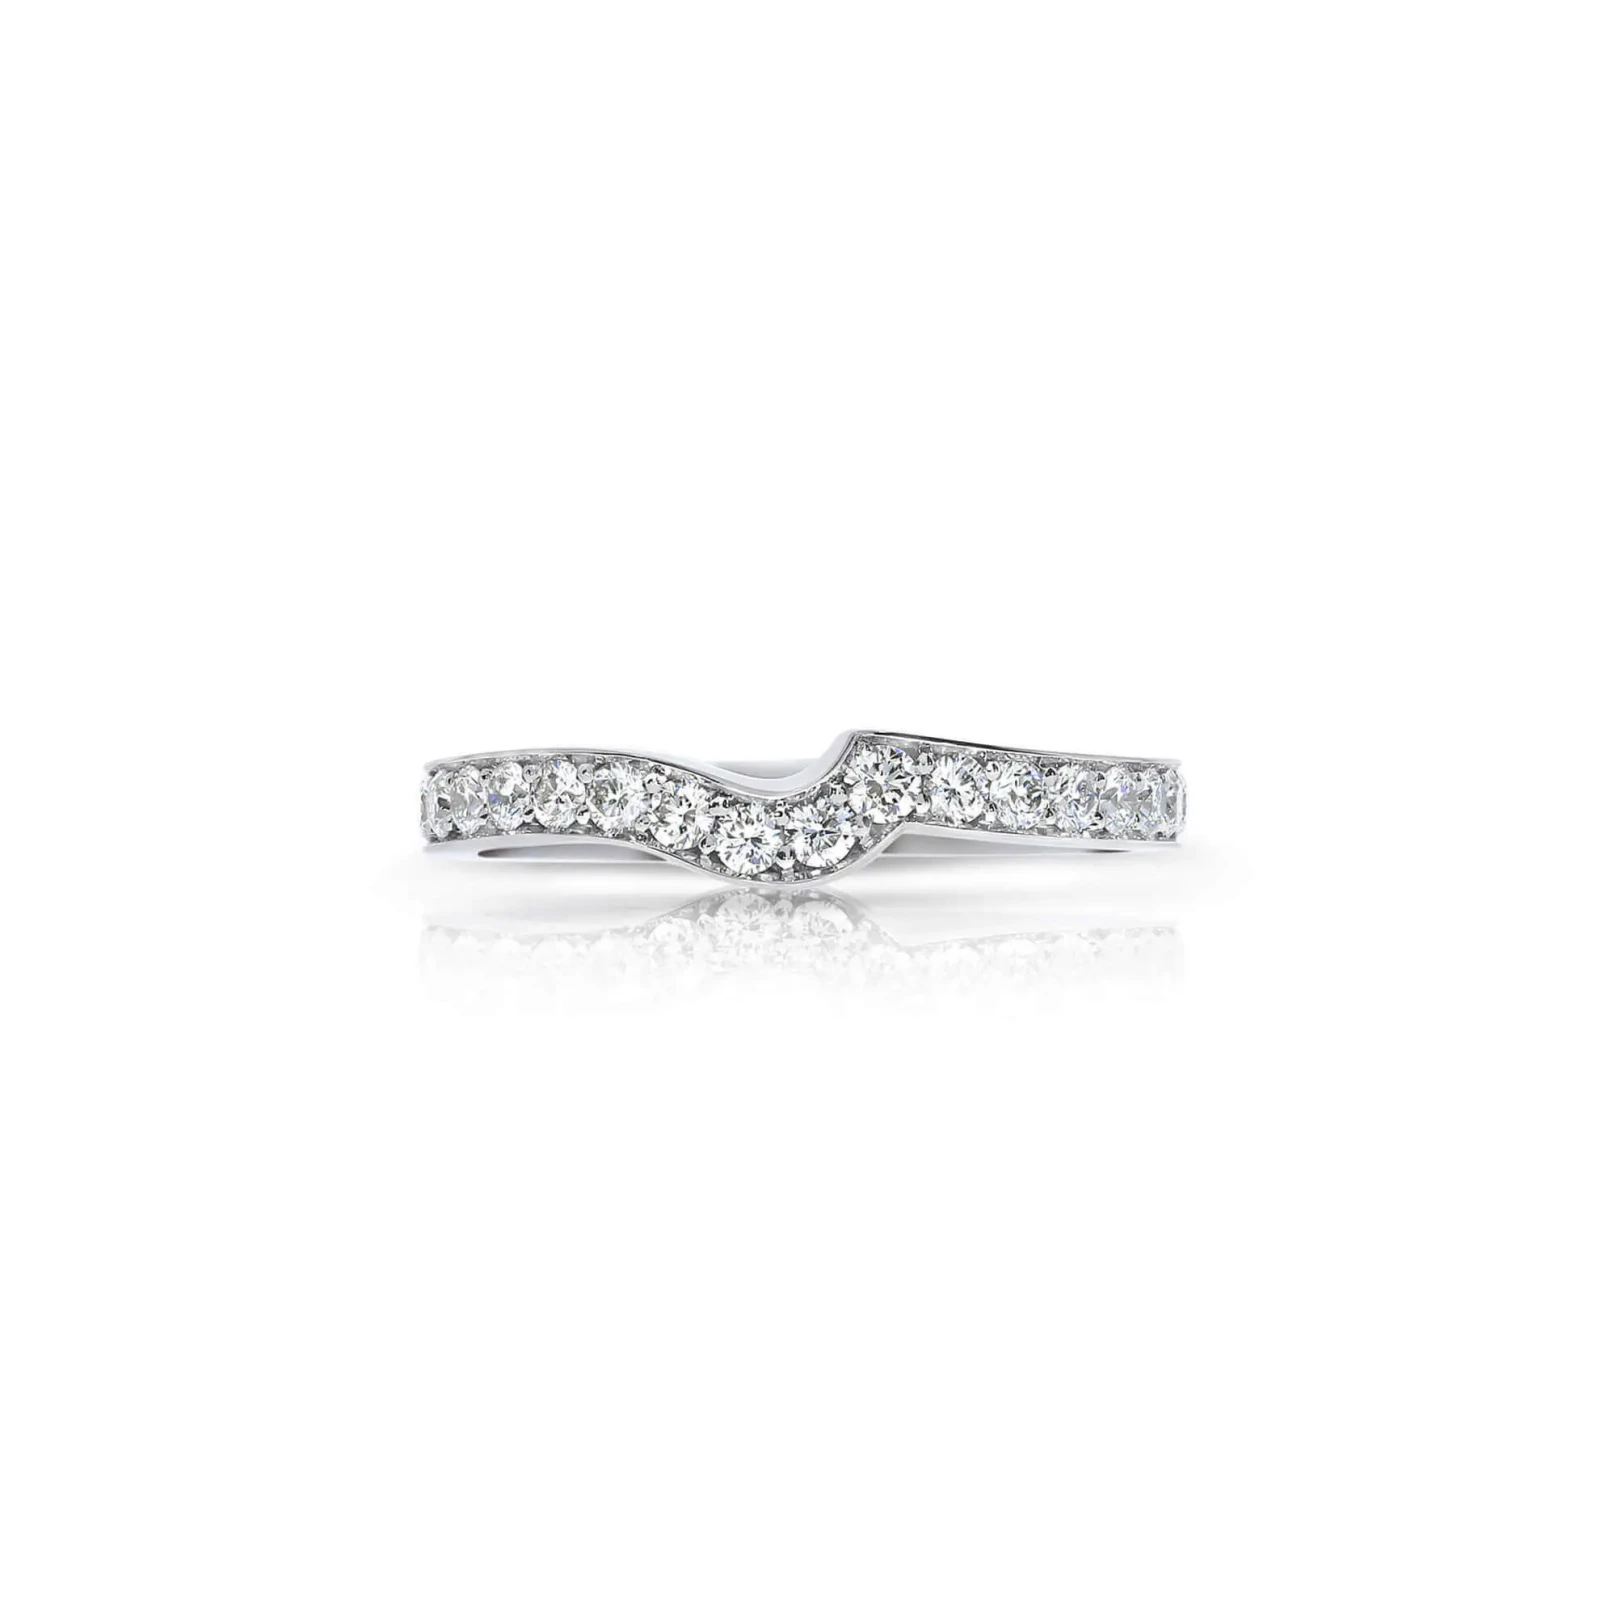 Contoured Pavé Set Diamond Eternity Wedding Ring